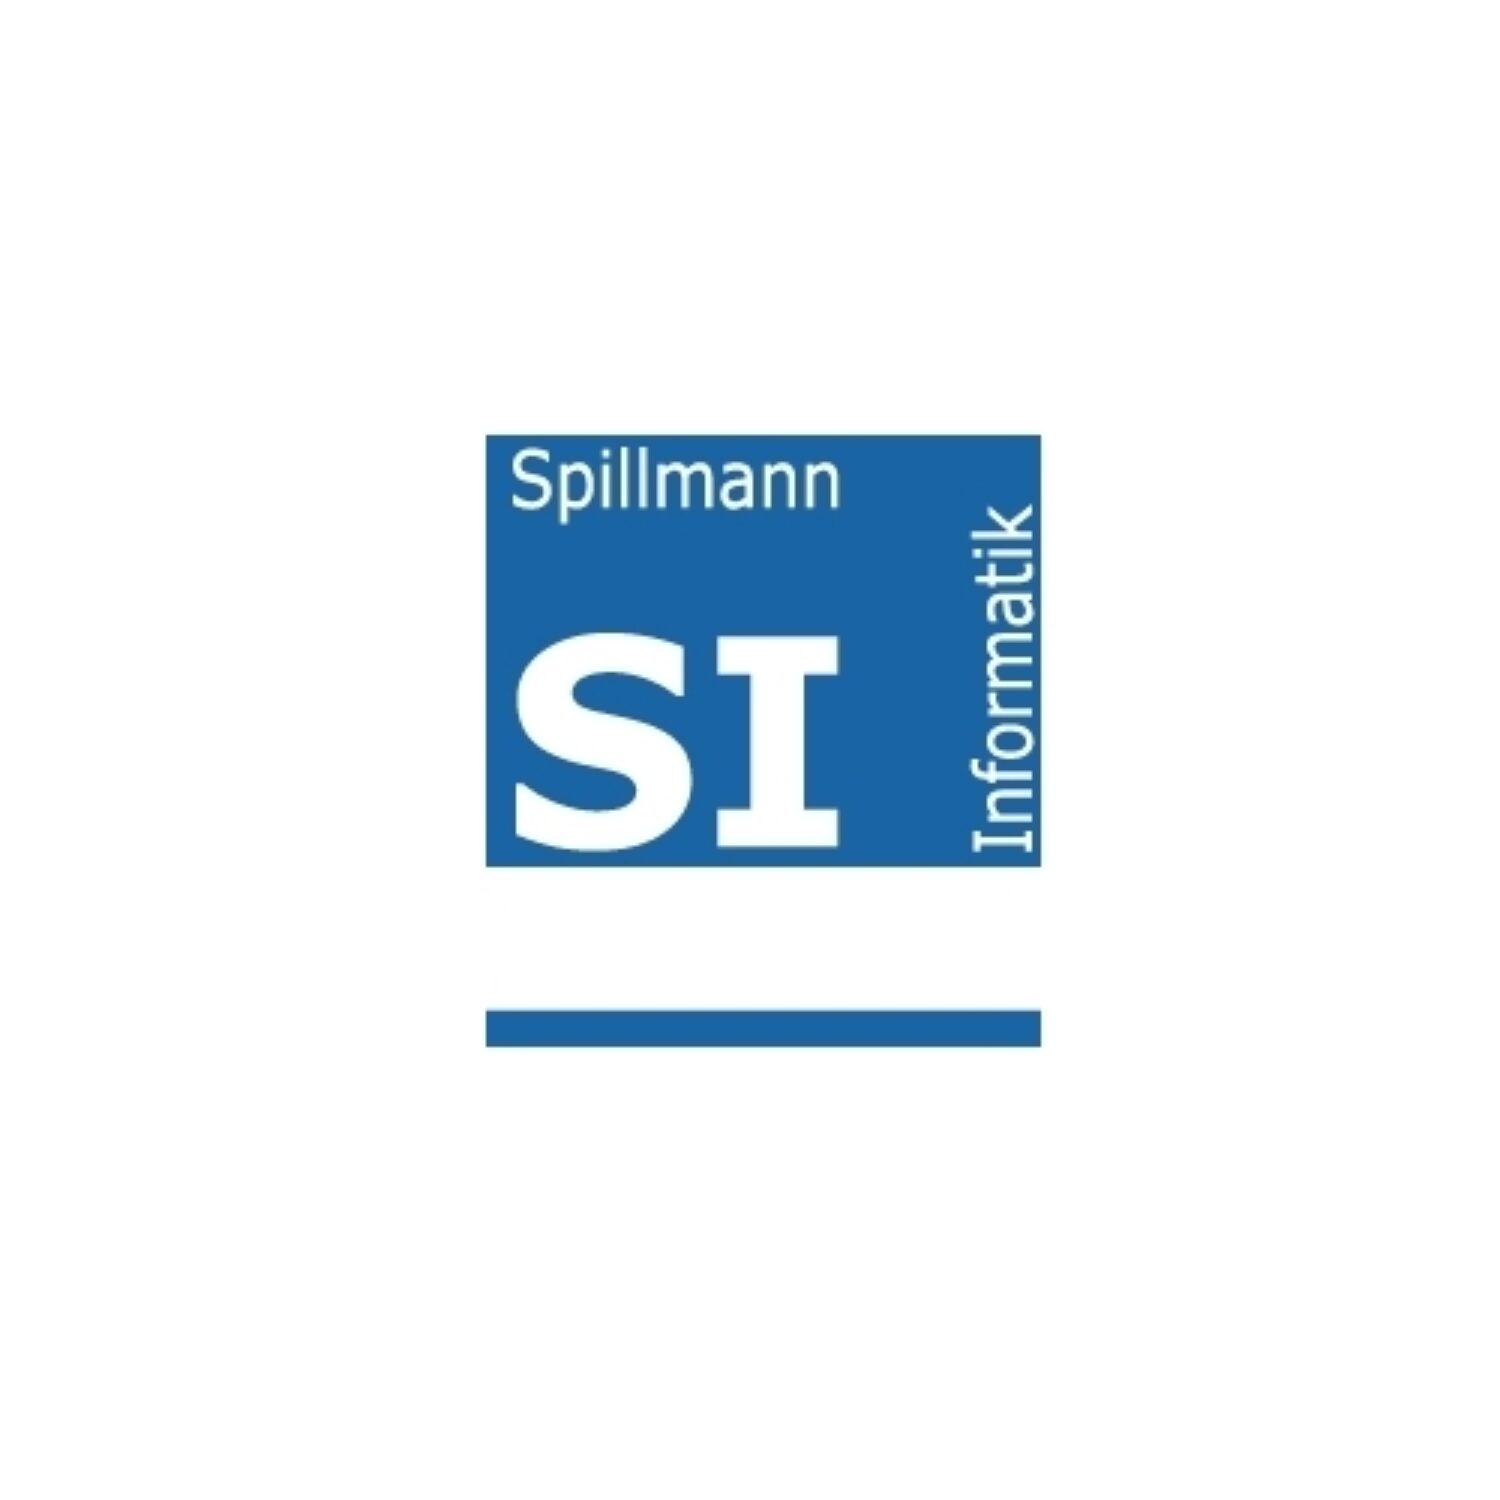 2019 Spillmann